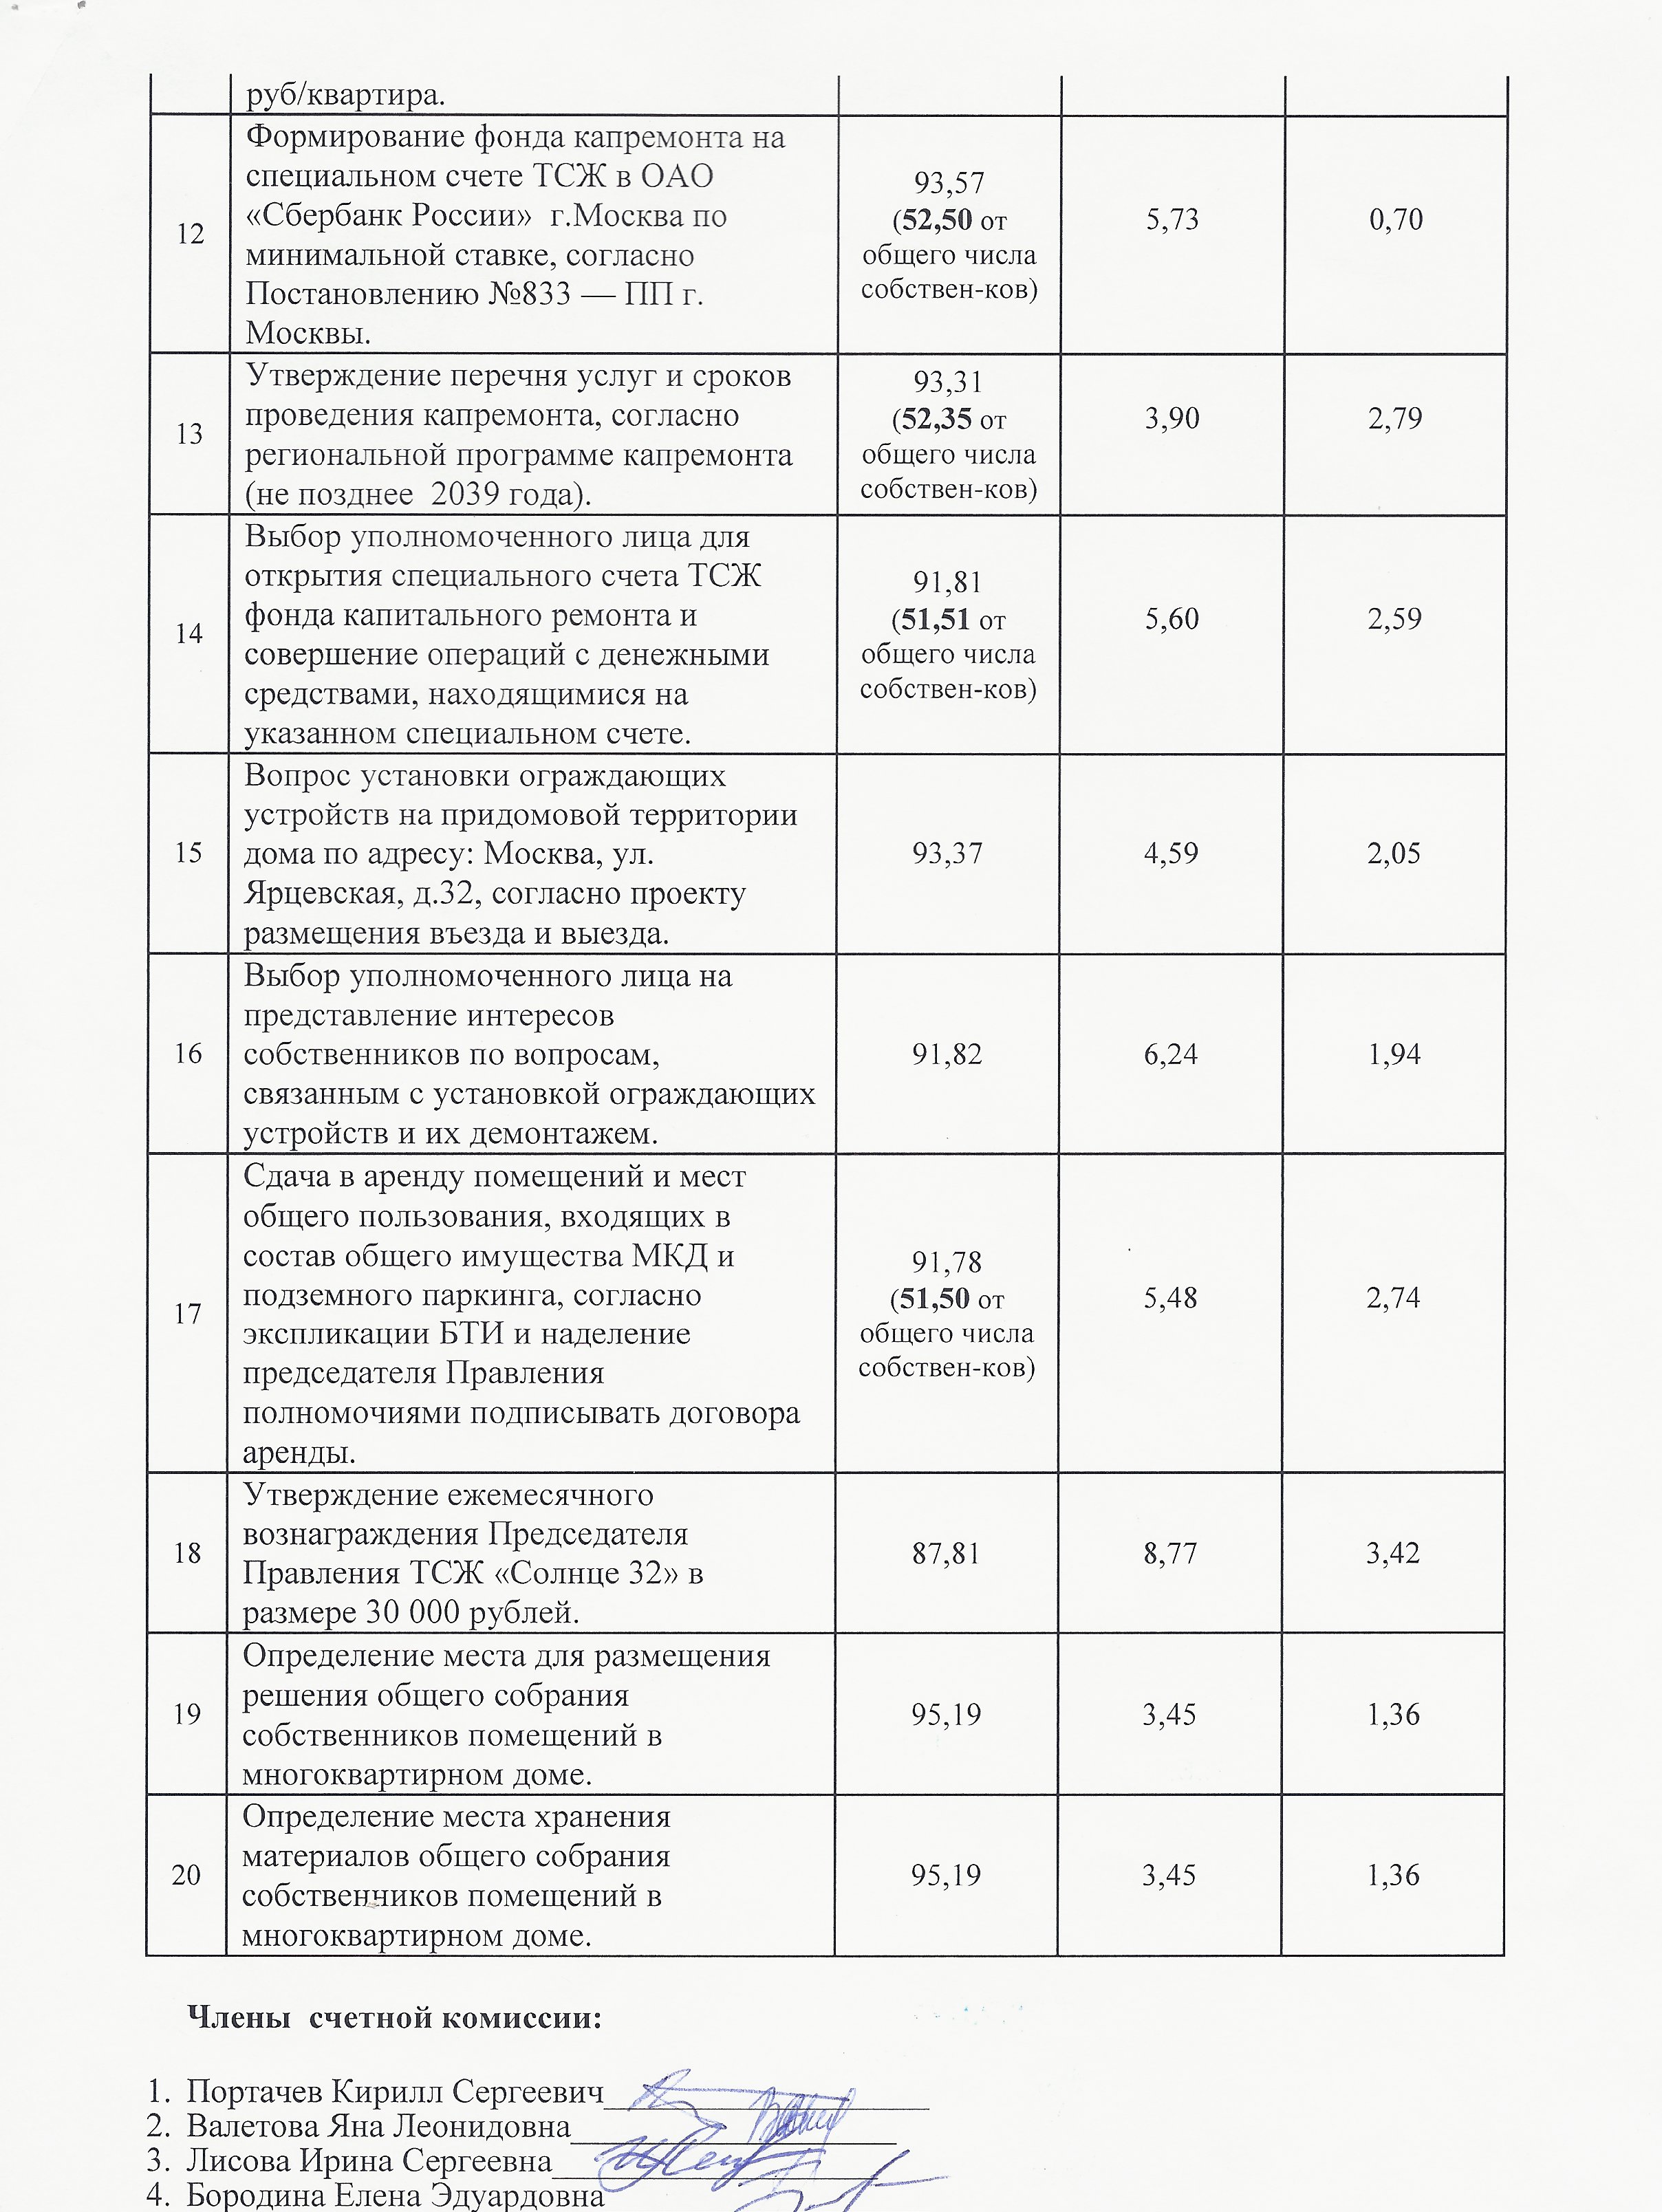 Протокол счетной комиссии от 30.05.2015г. стр.2